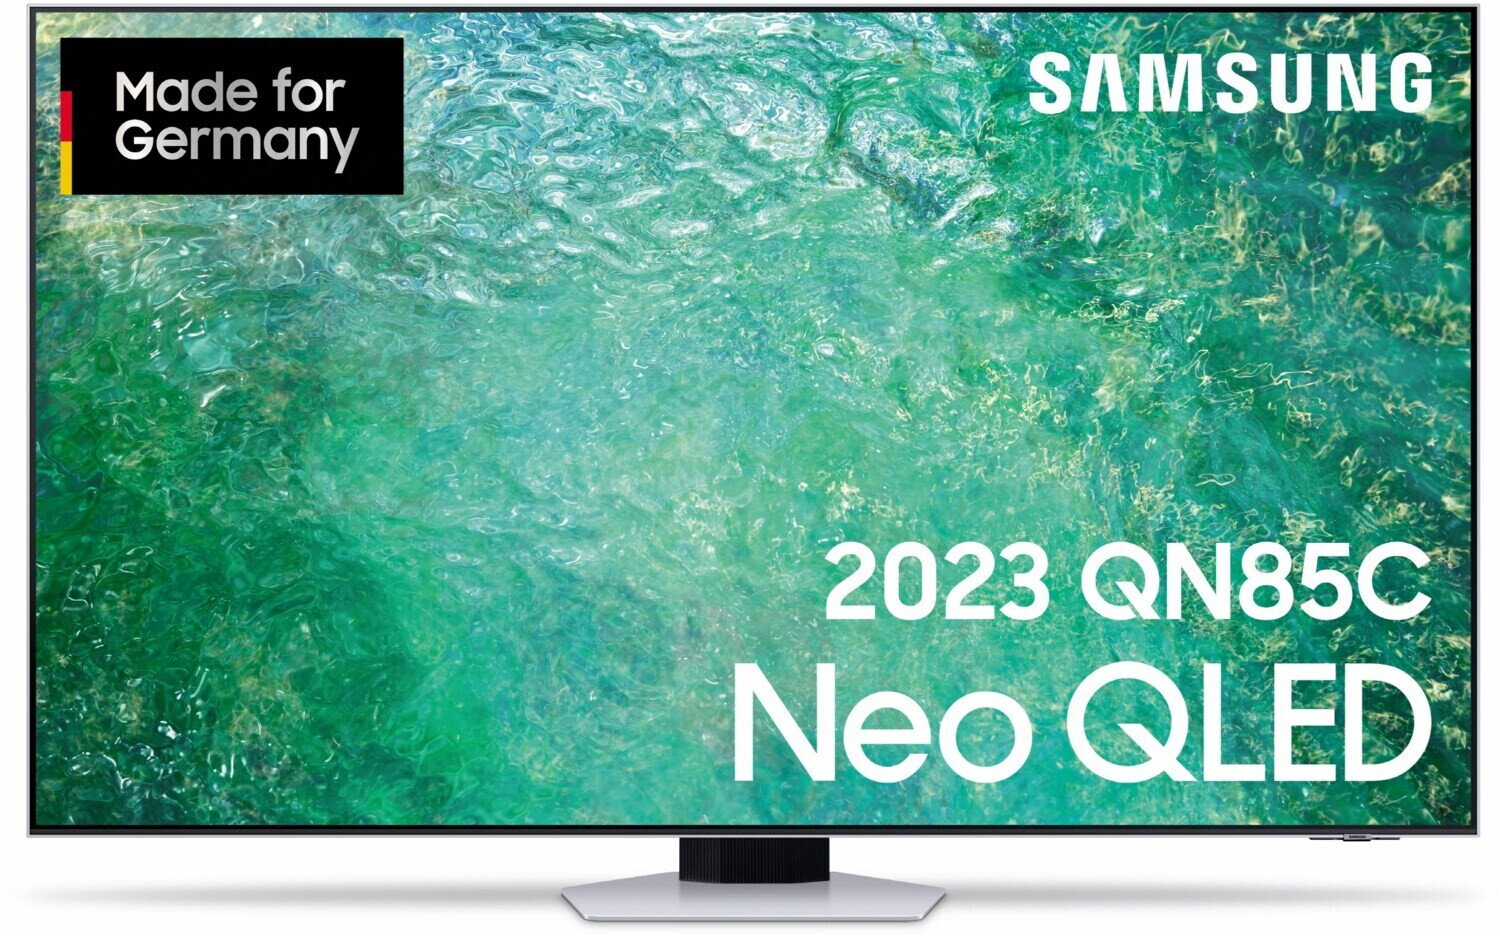 Samsung GQ75Q85RGTXZG 75 QLED 4k UHD Smart TV - Schwarz online kaufen